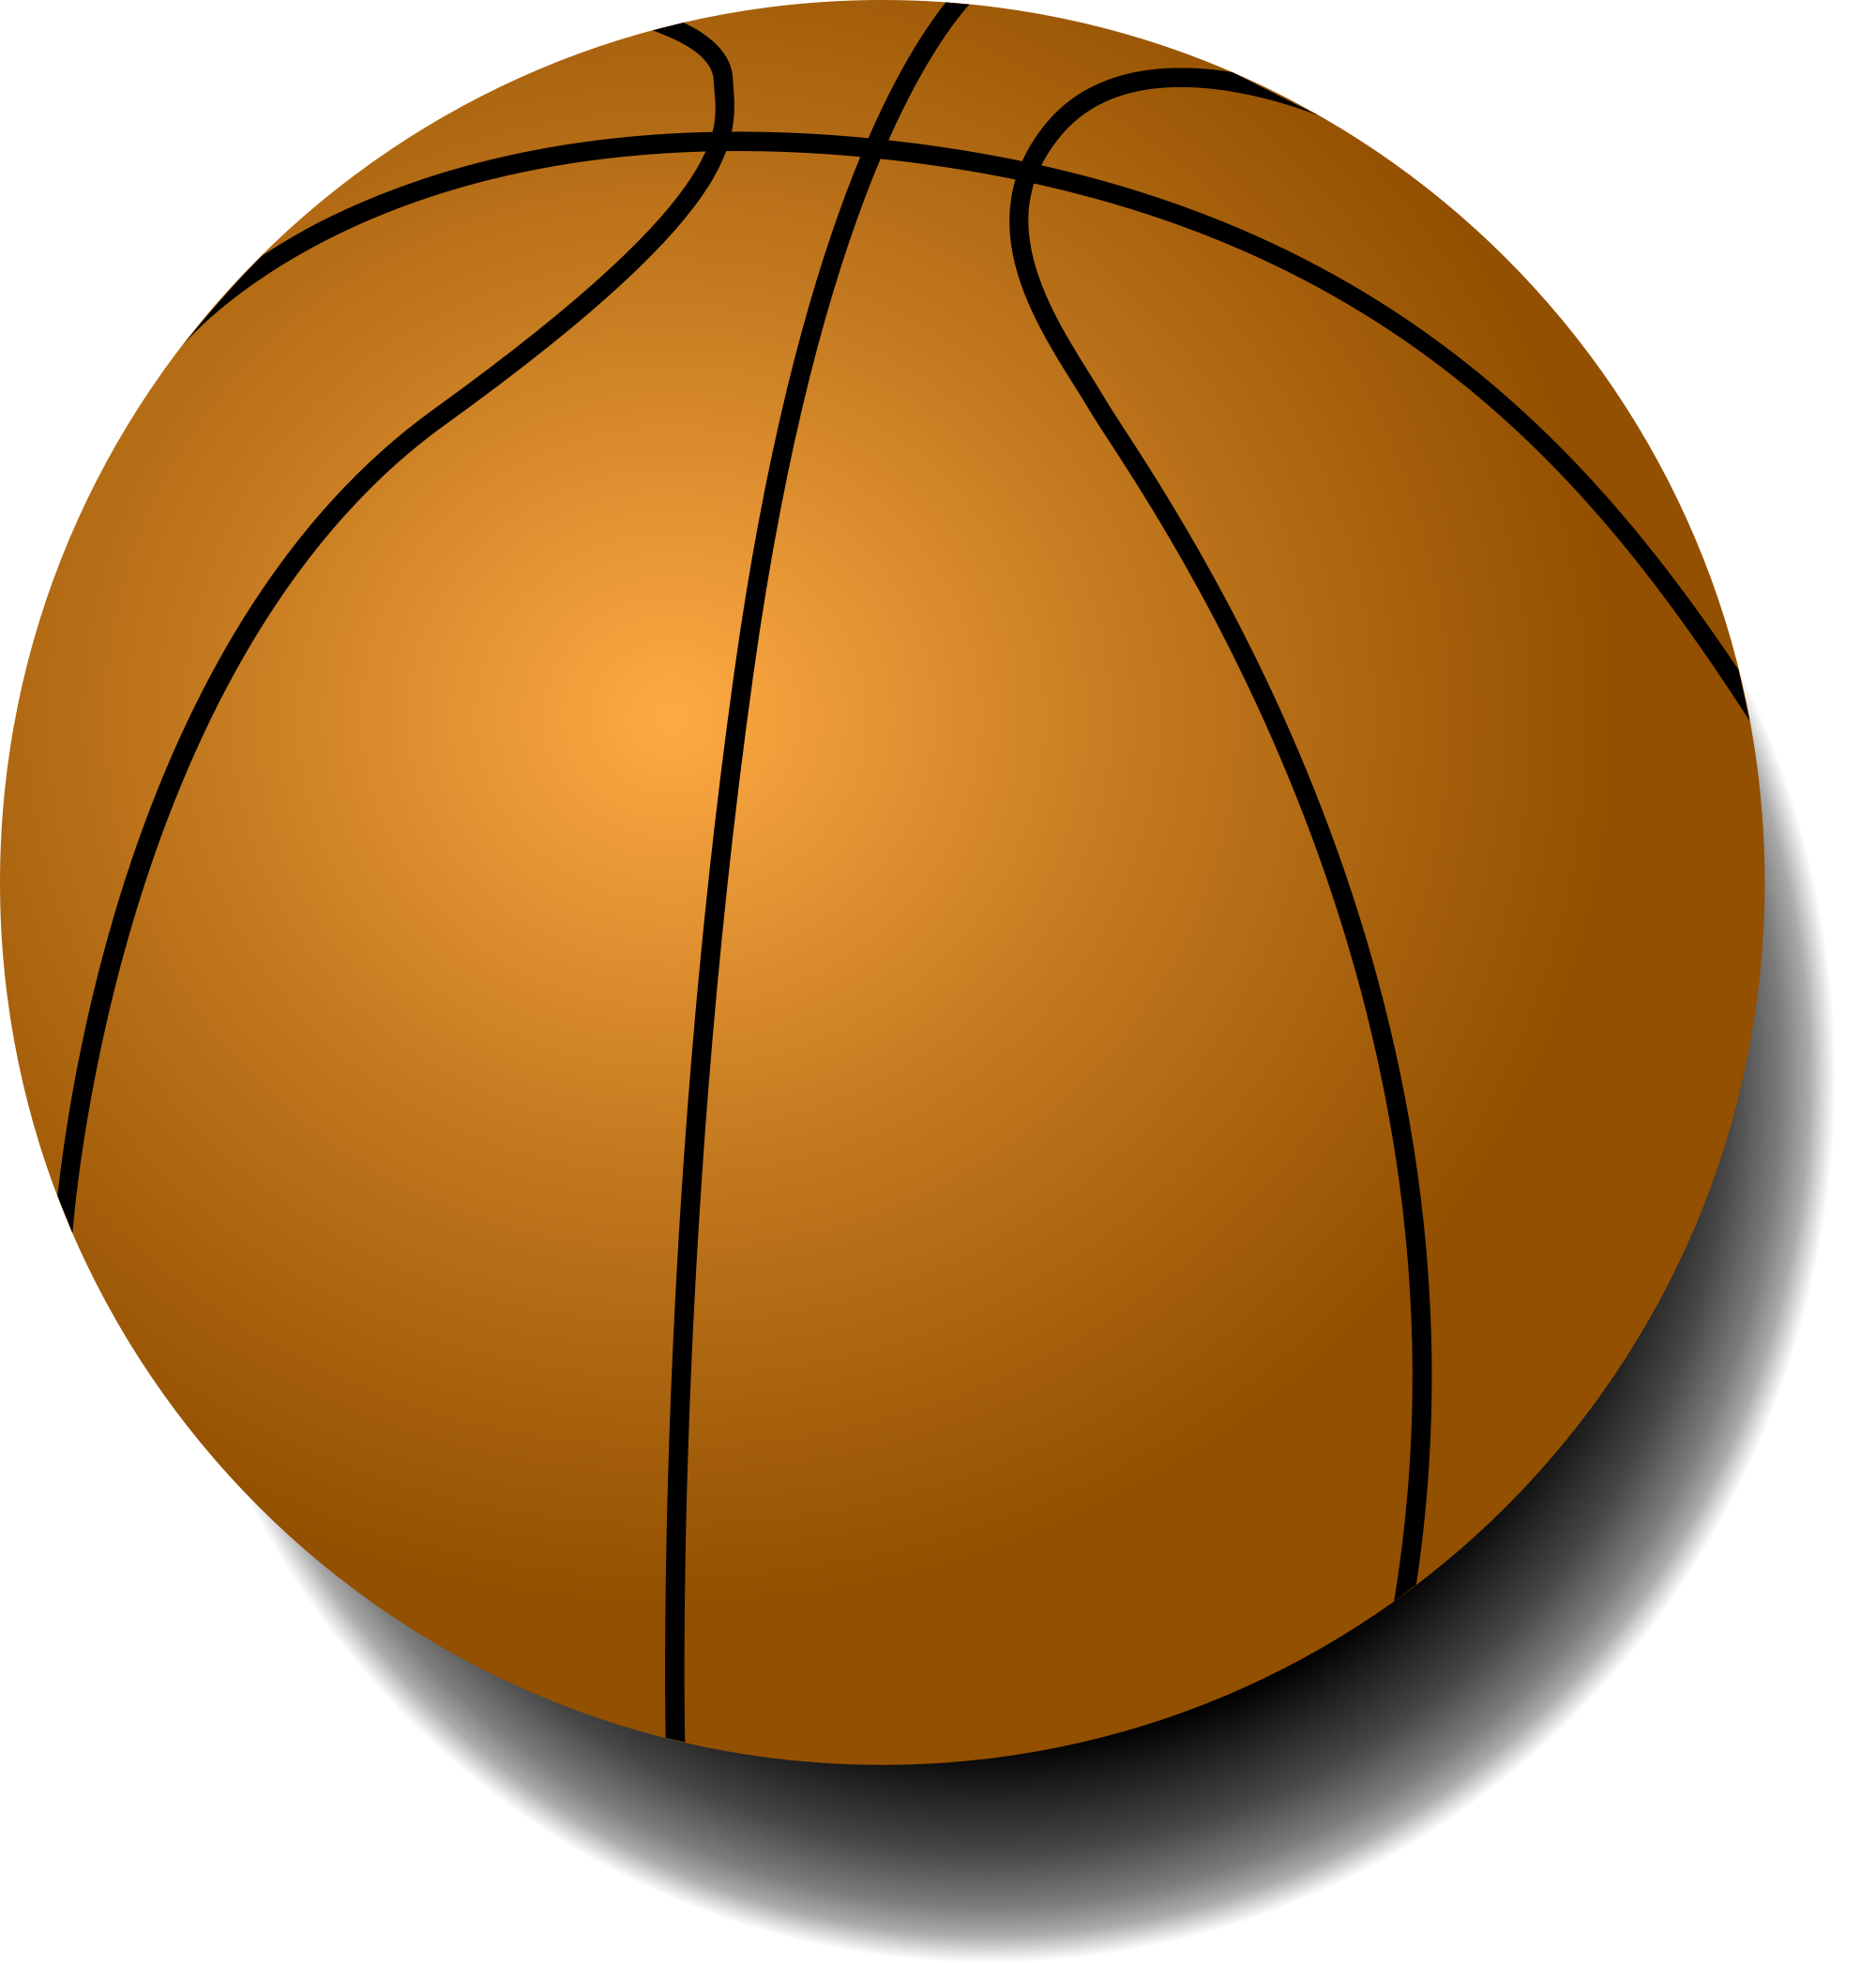 clipart basketball street basketball